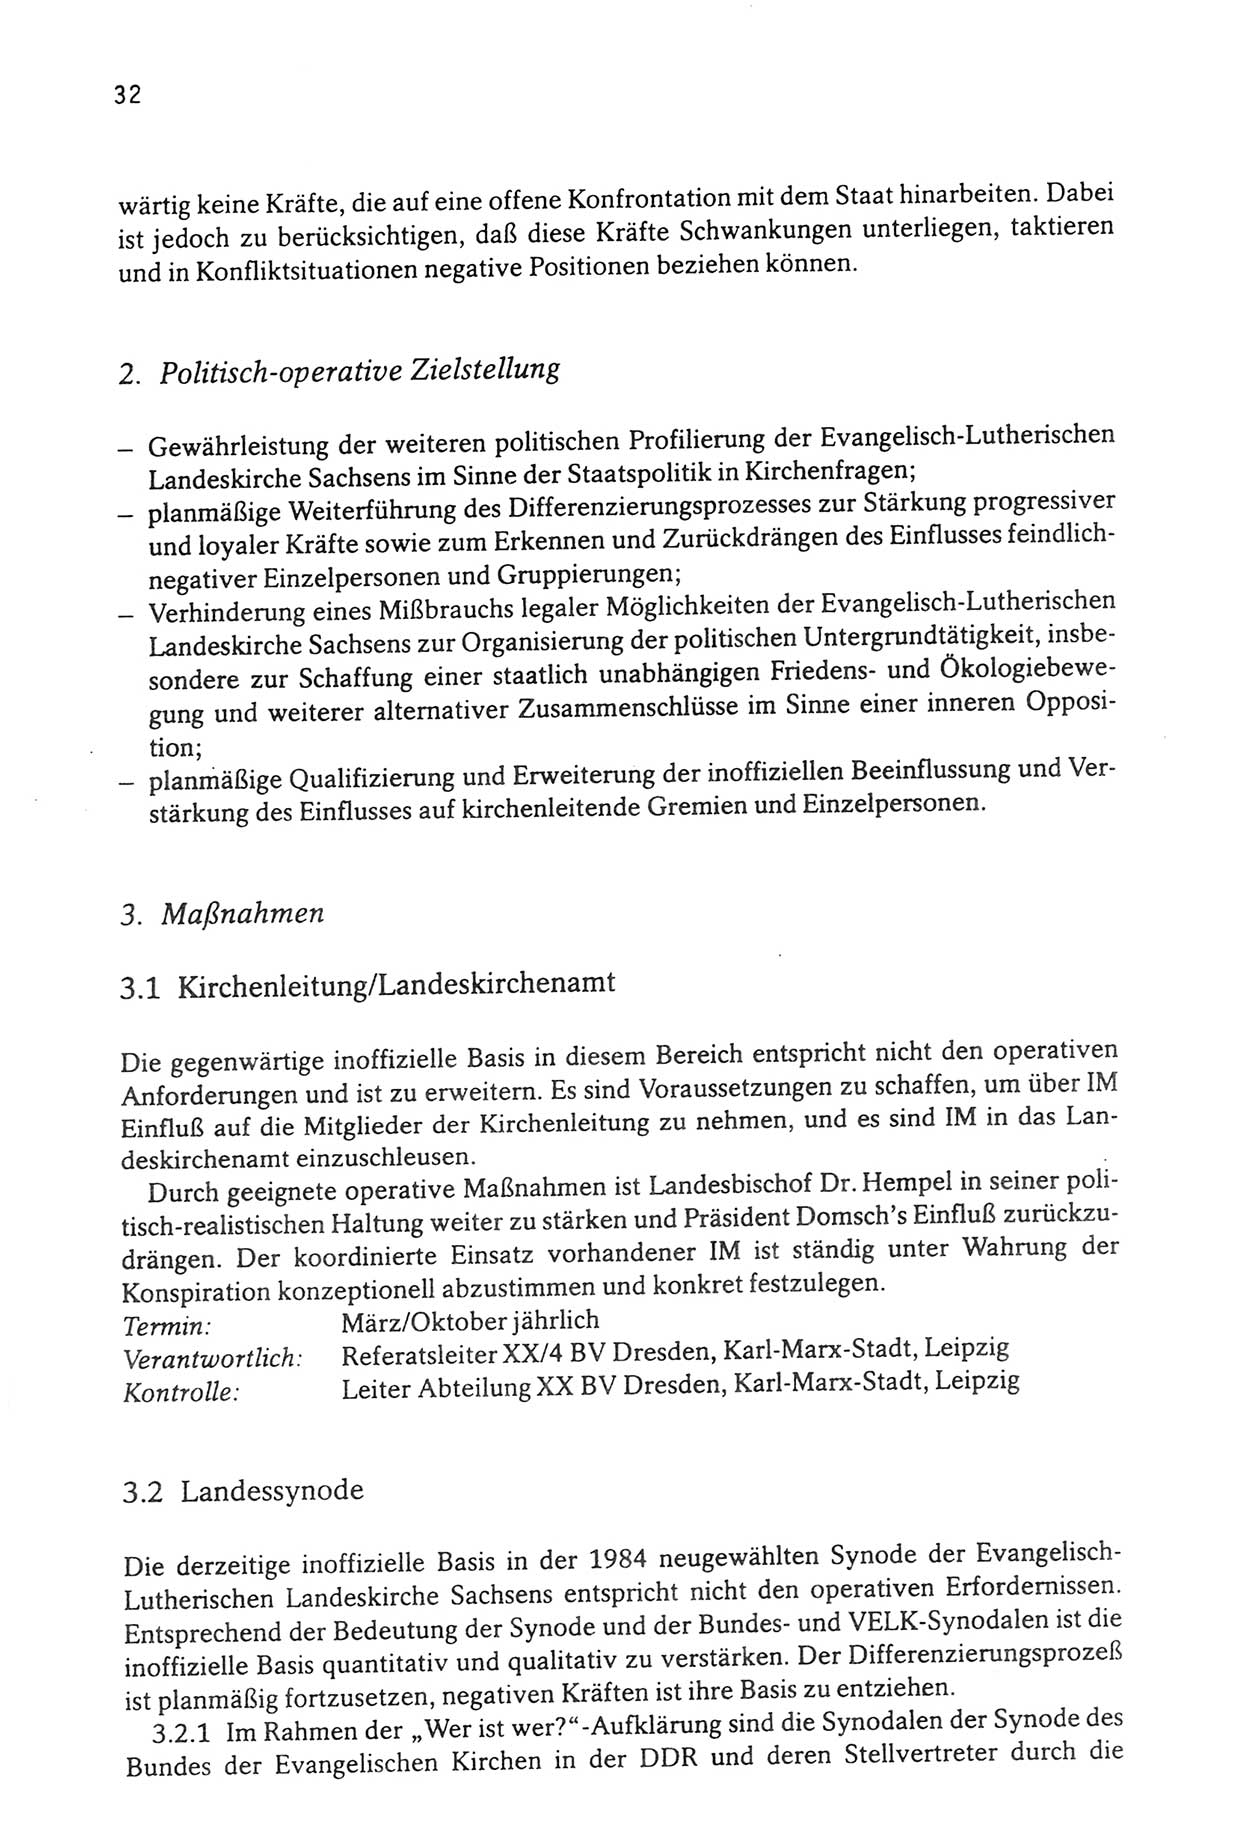 Zwie-Gespräch, Beiträge zur Aufarbeitung der Stasi-Vergangenheit [Deutsche Demokratische Republik (DDR)], Ausgabe Nr. 3, Berlin 1991, Seite 32 (Zwie-Gespr. Ausg. 3 1991, S. 32)